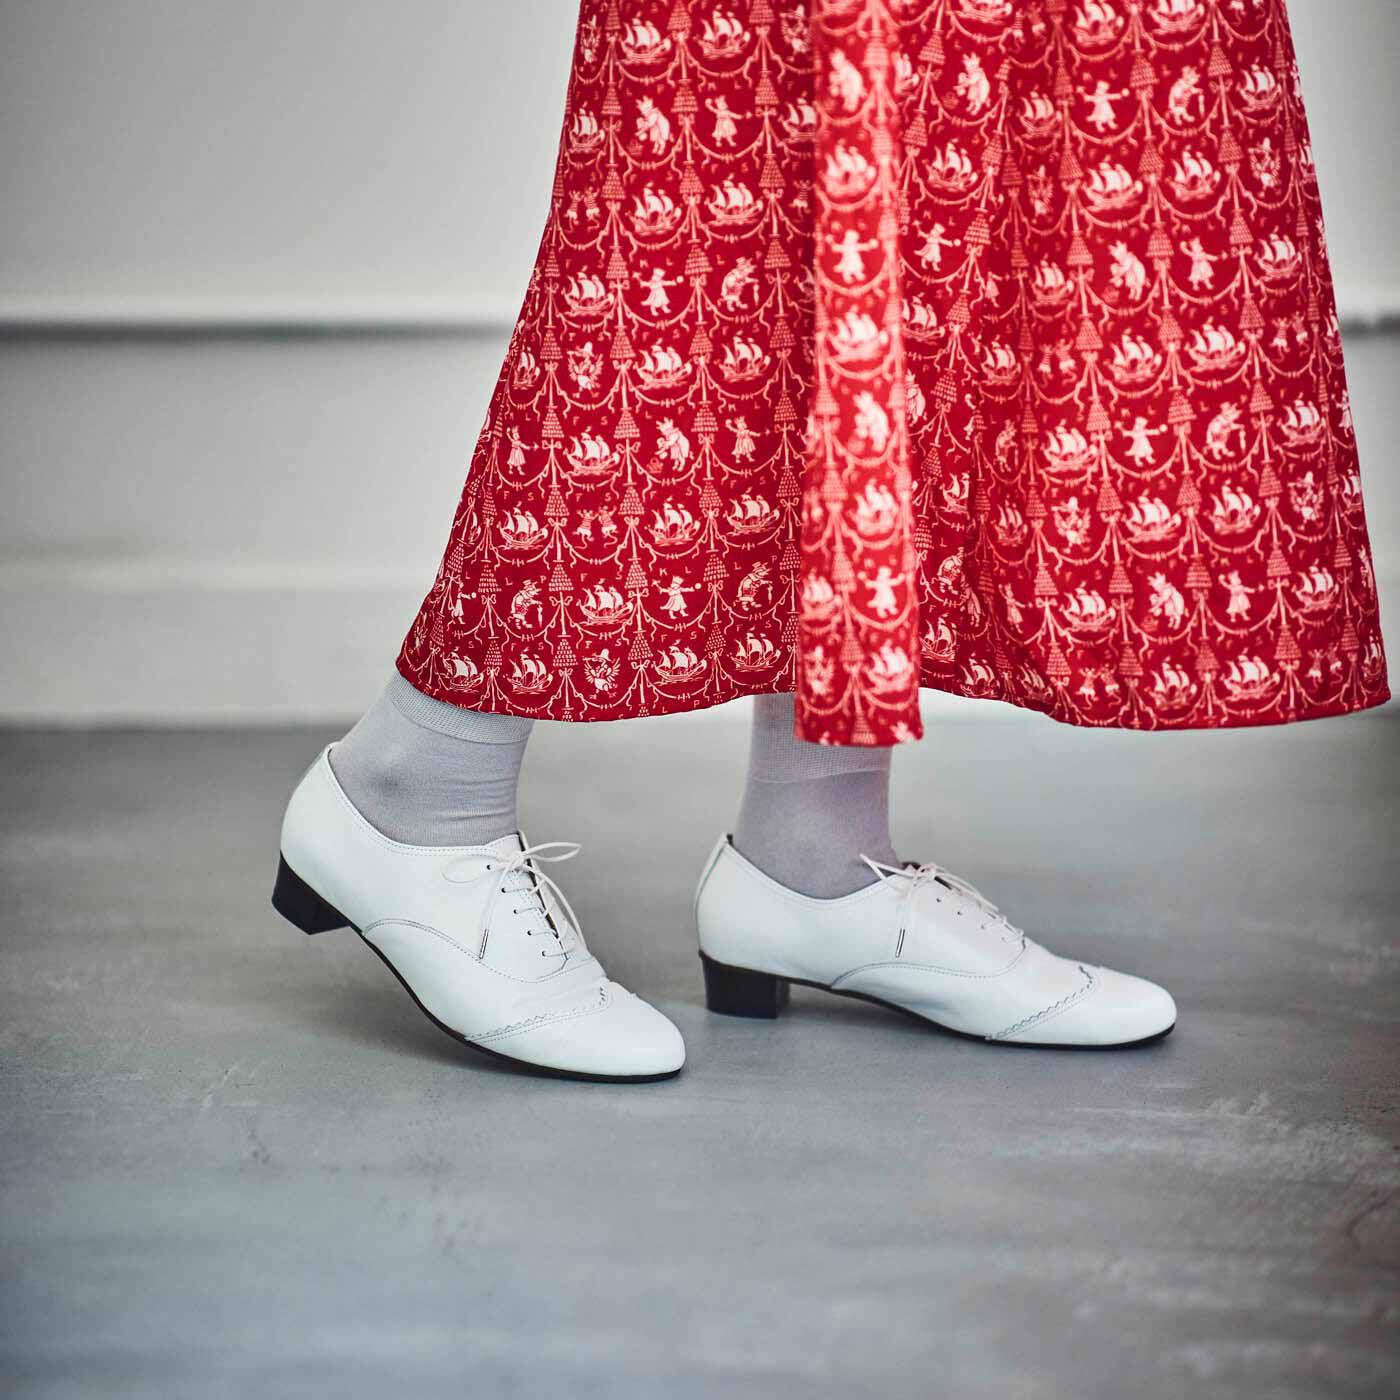 ＆Stories|長田の靴メーカーと作った 職人本革のレースアップシューズ〈ホワイト〉|ソールはクッション性に優れ、ほどよいヒール高でパンツもスカートもバランスよく着こなせます。